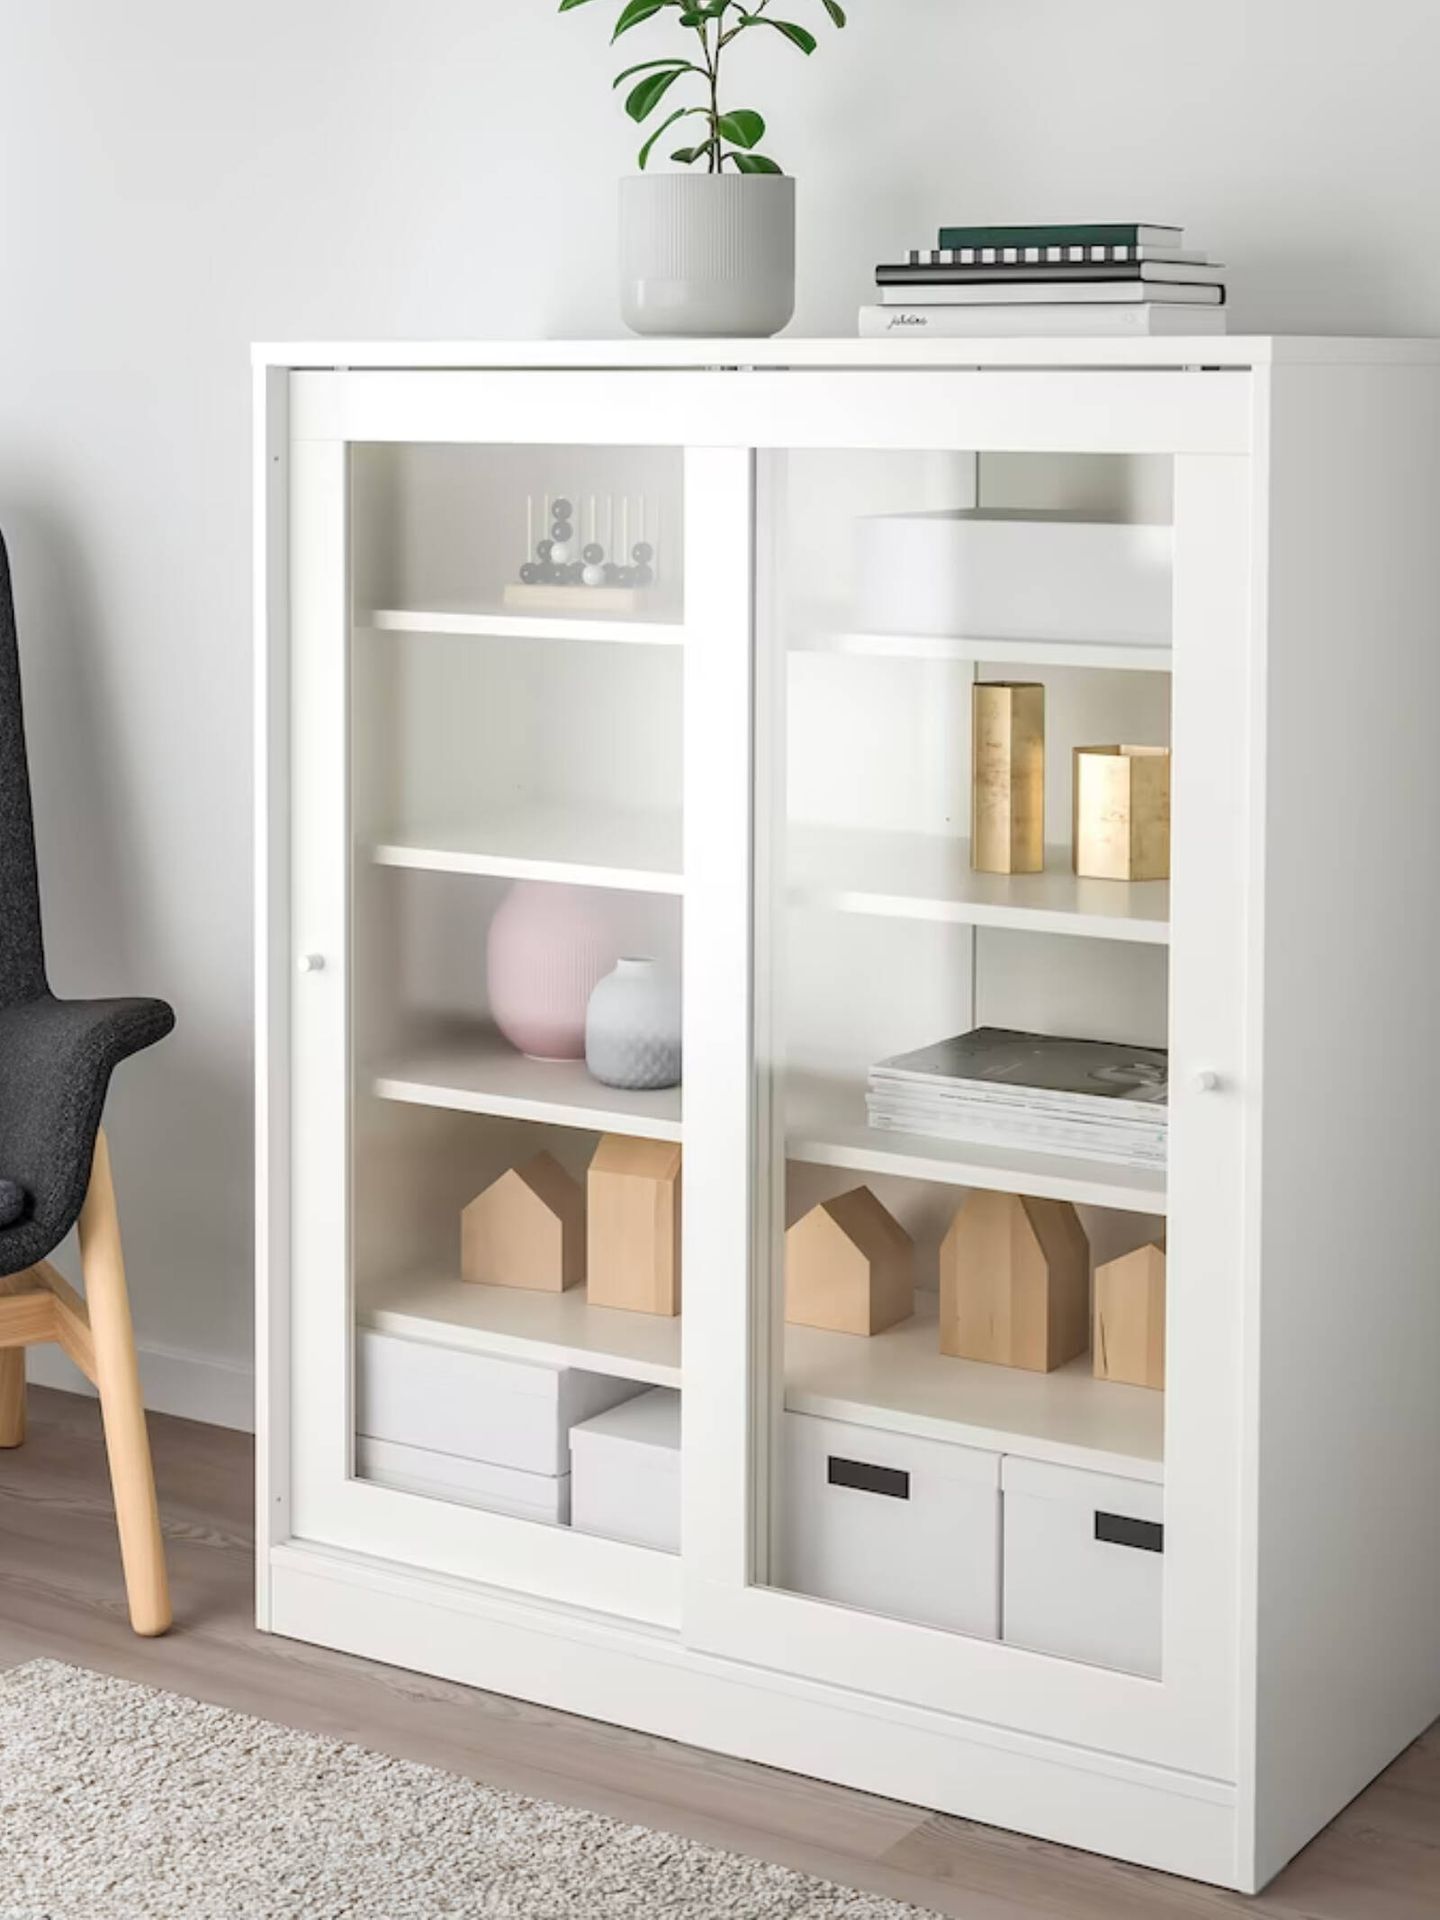 Este mueble de Ikea es ideal para todas las habitaciones de la casa. (Cortesía/Ikea)